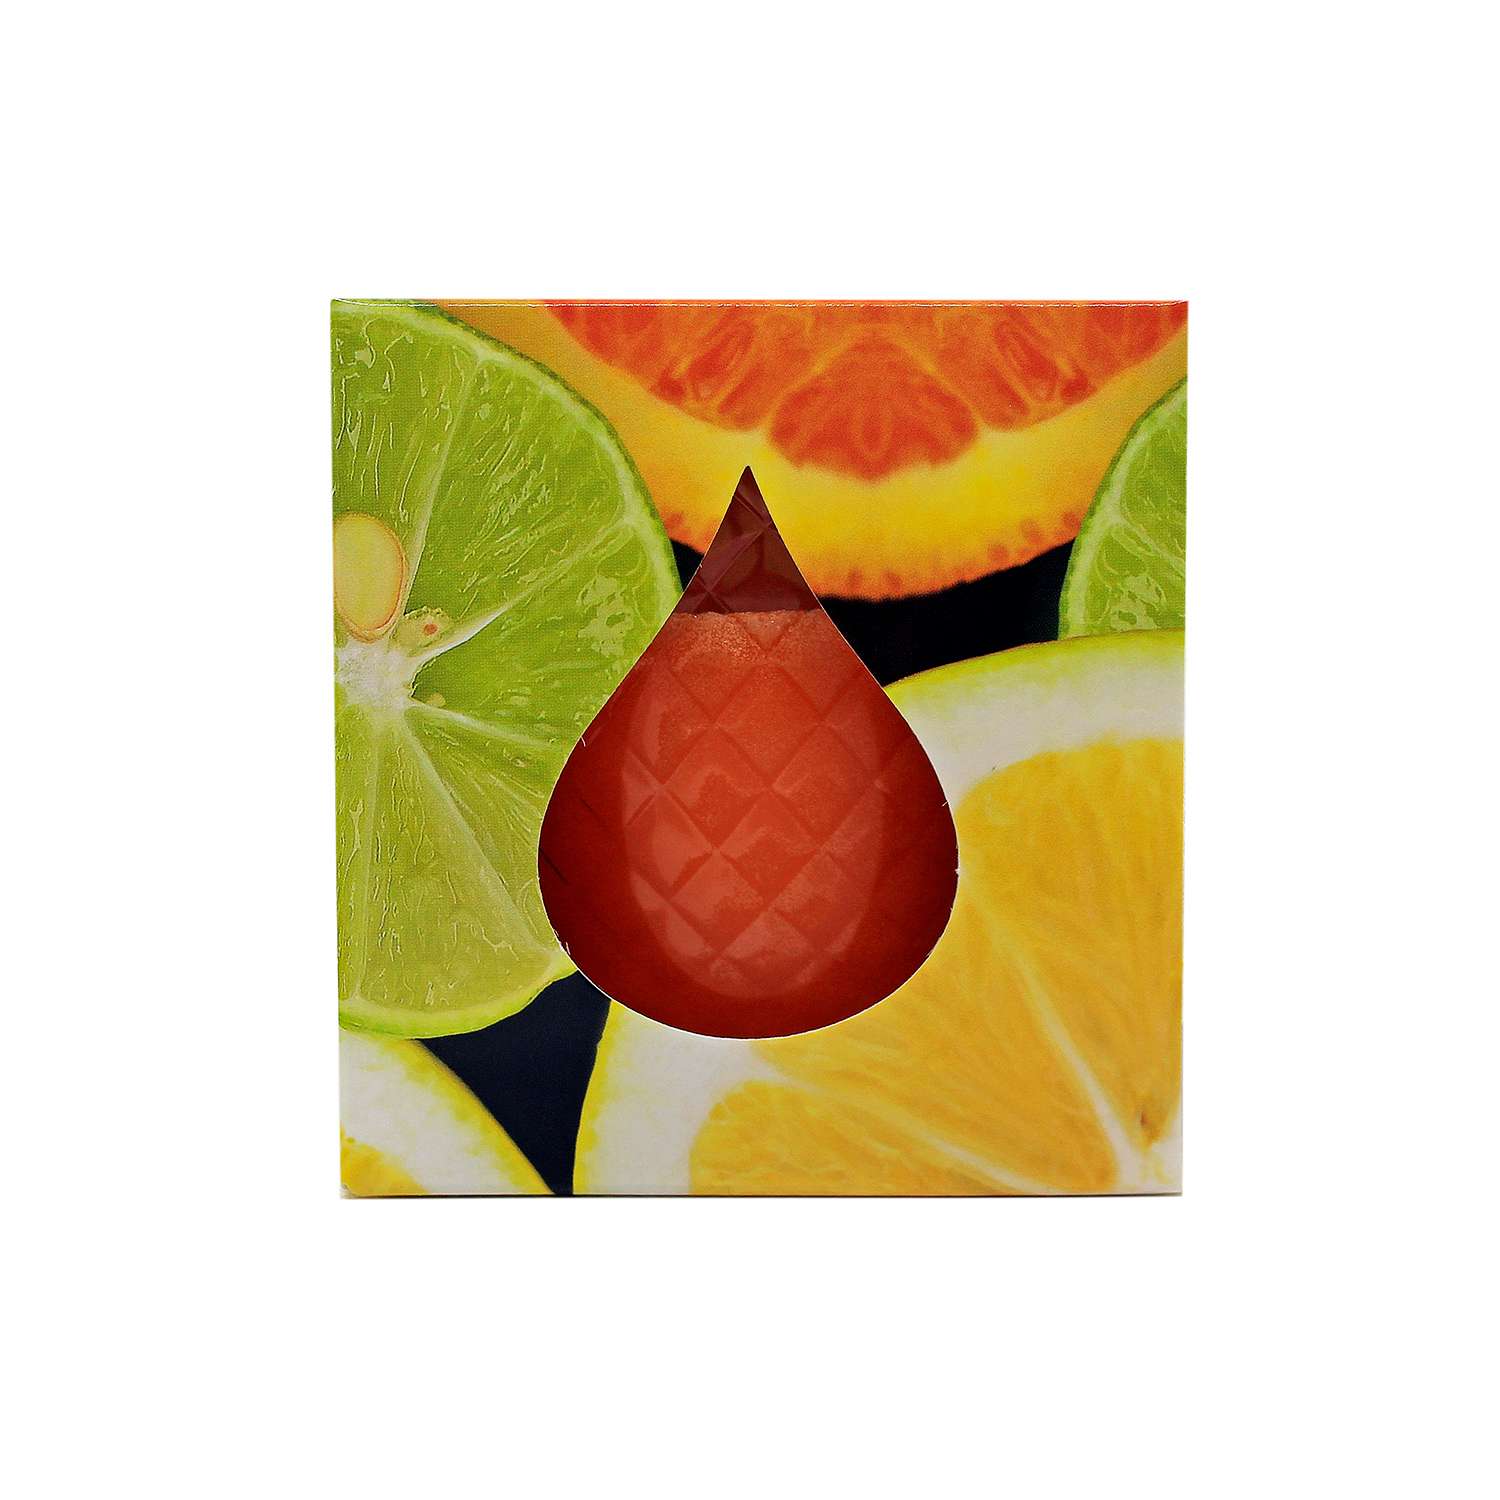 Свеча Рсм в стакане цитрус-грейпфрут 3113035 - фото 3